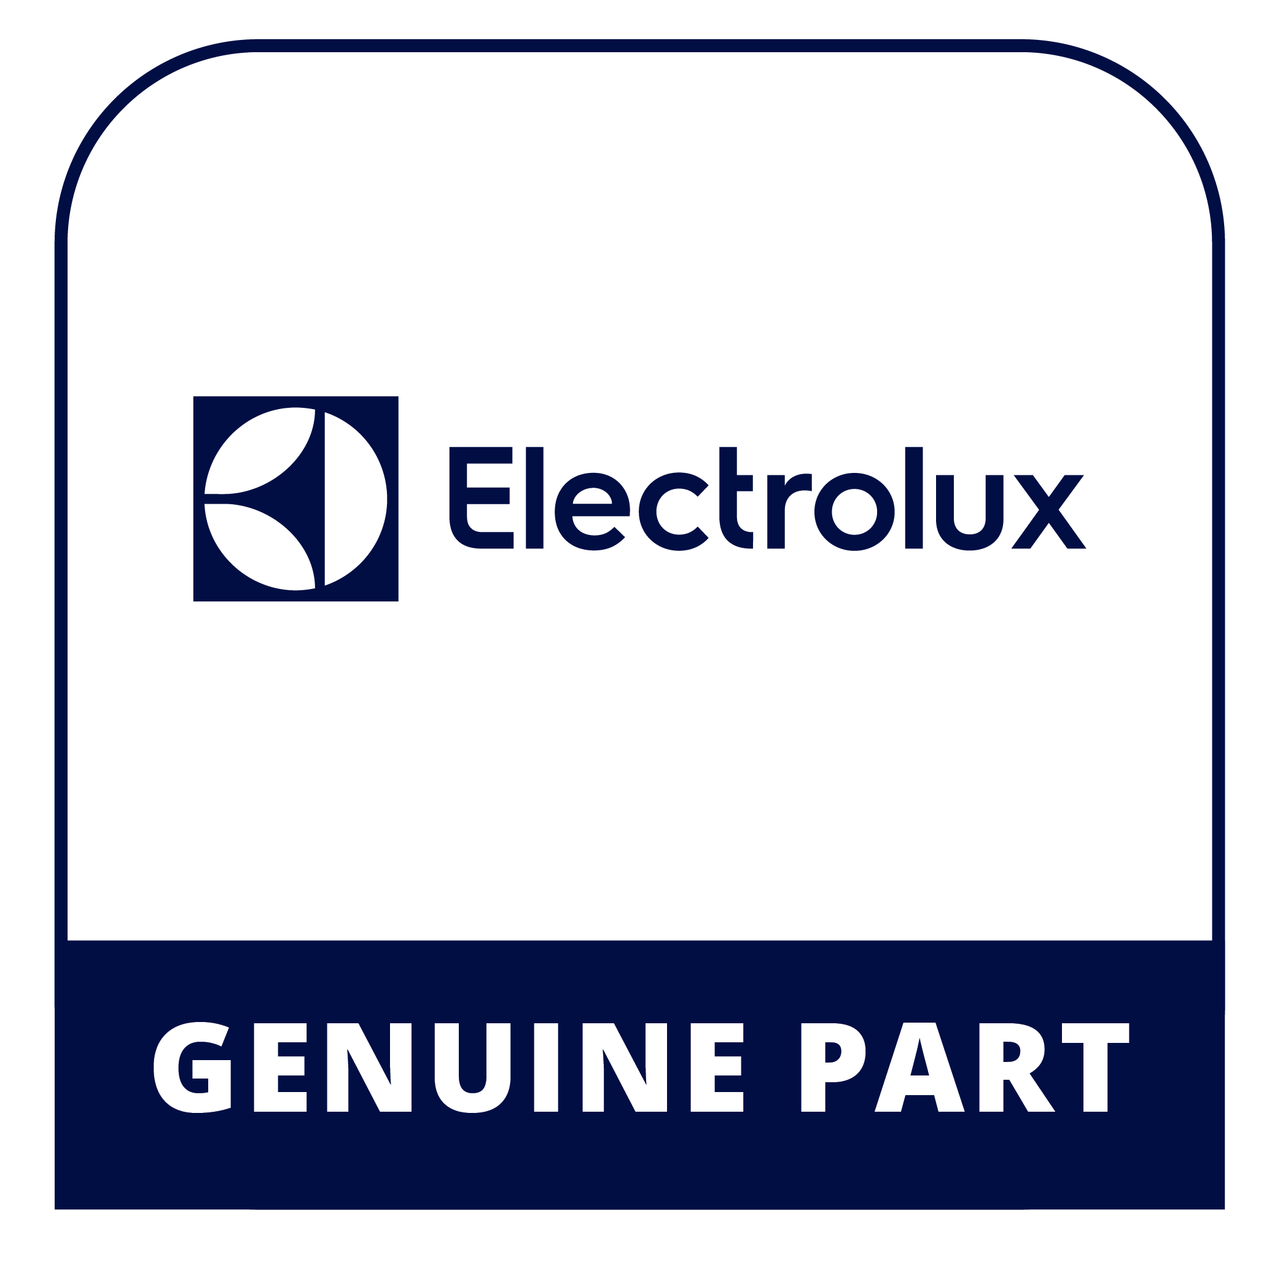 Frigidaire - Electrolux 297054200 Slide-Basket - Genuine Electrolux Part